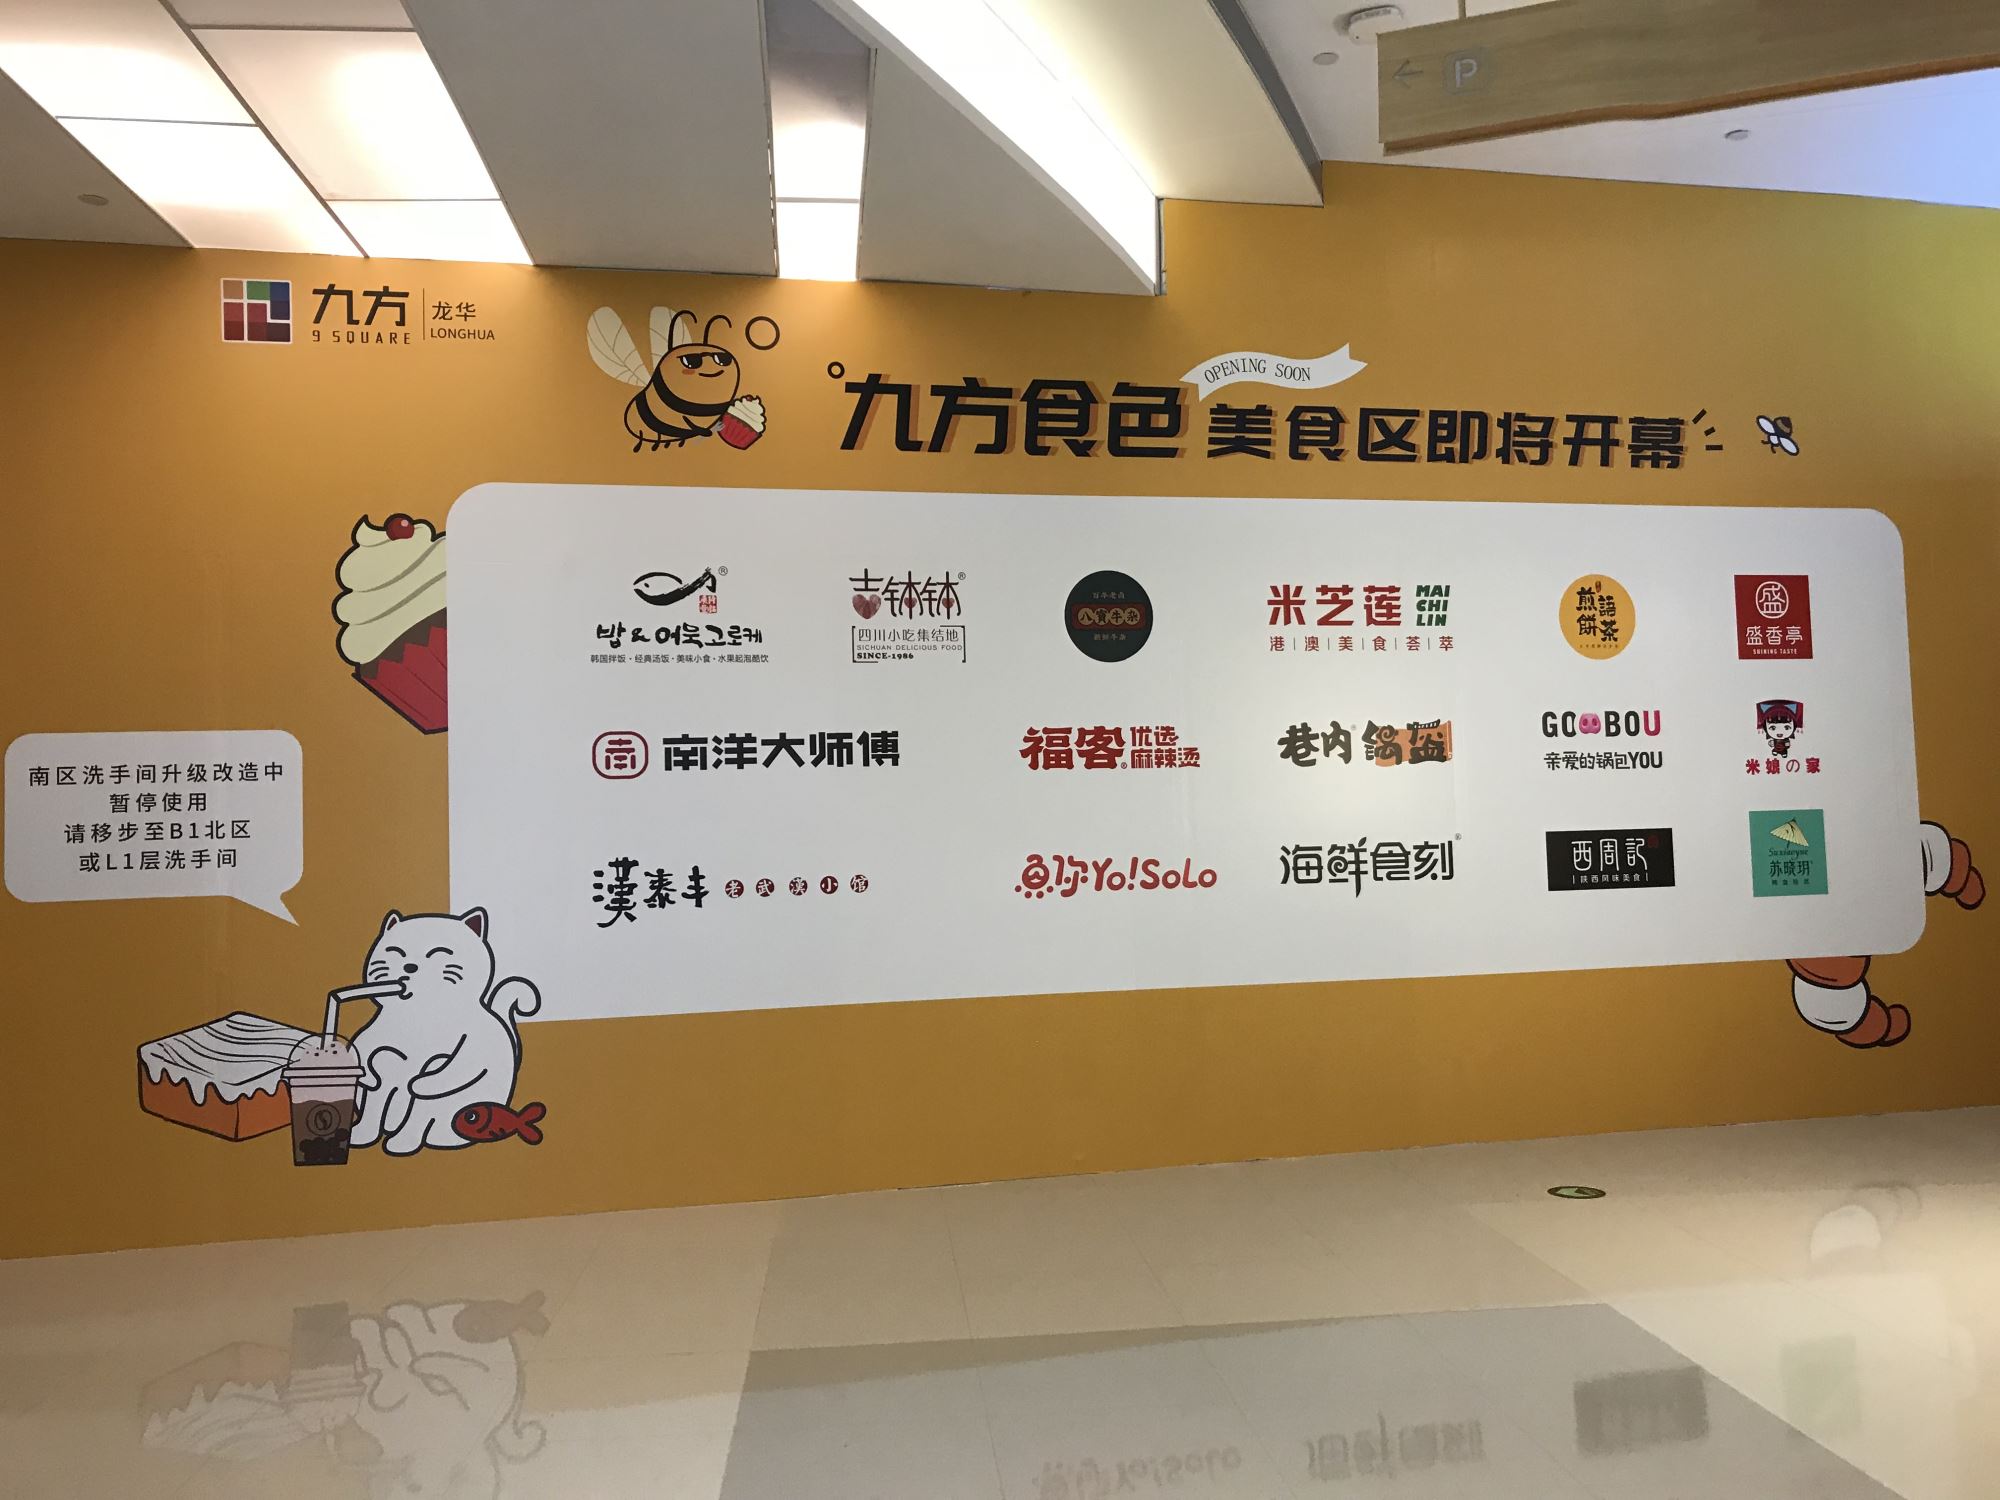 龙华九方购物中心B1层将打造食色美食区  中国李宁等近20个品牌待开业